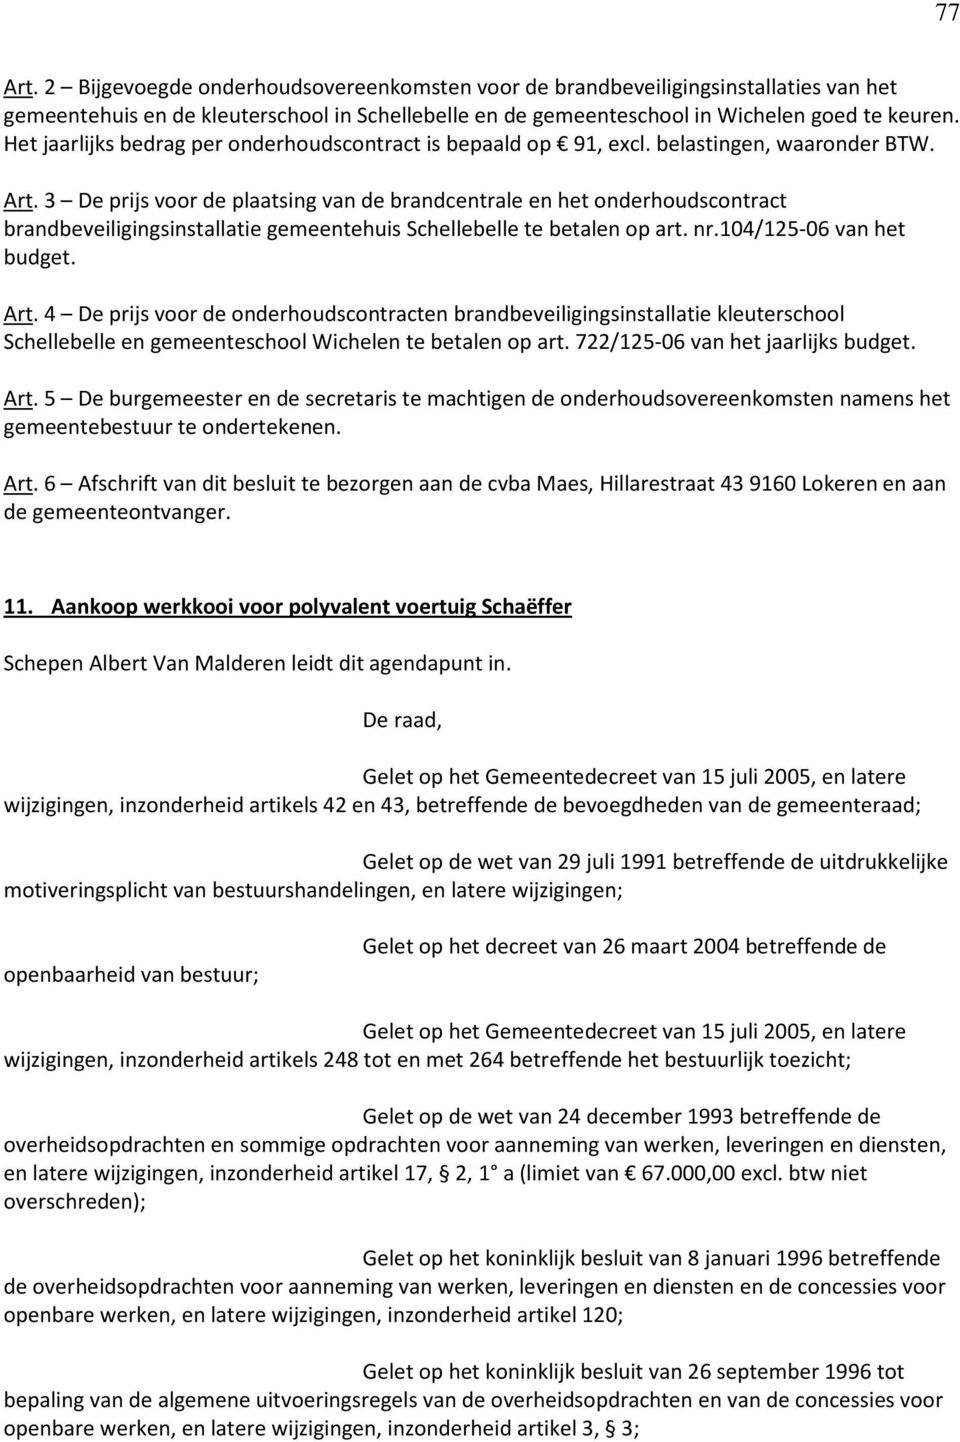 3 De prijs voor de plaatsing van de brandcentrale en het onderhoudscontract brandbeveiligingsinstallatie gemeentehuis Schellebelle te betalen op art. nr.104/125-06 van het budget. Art.